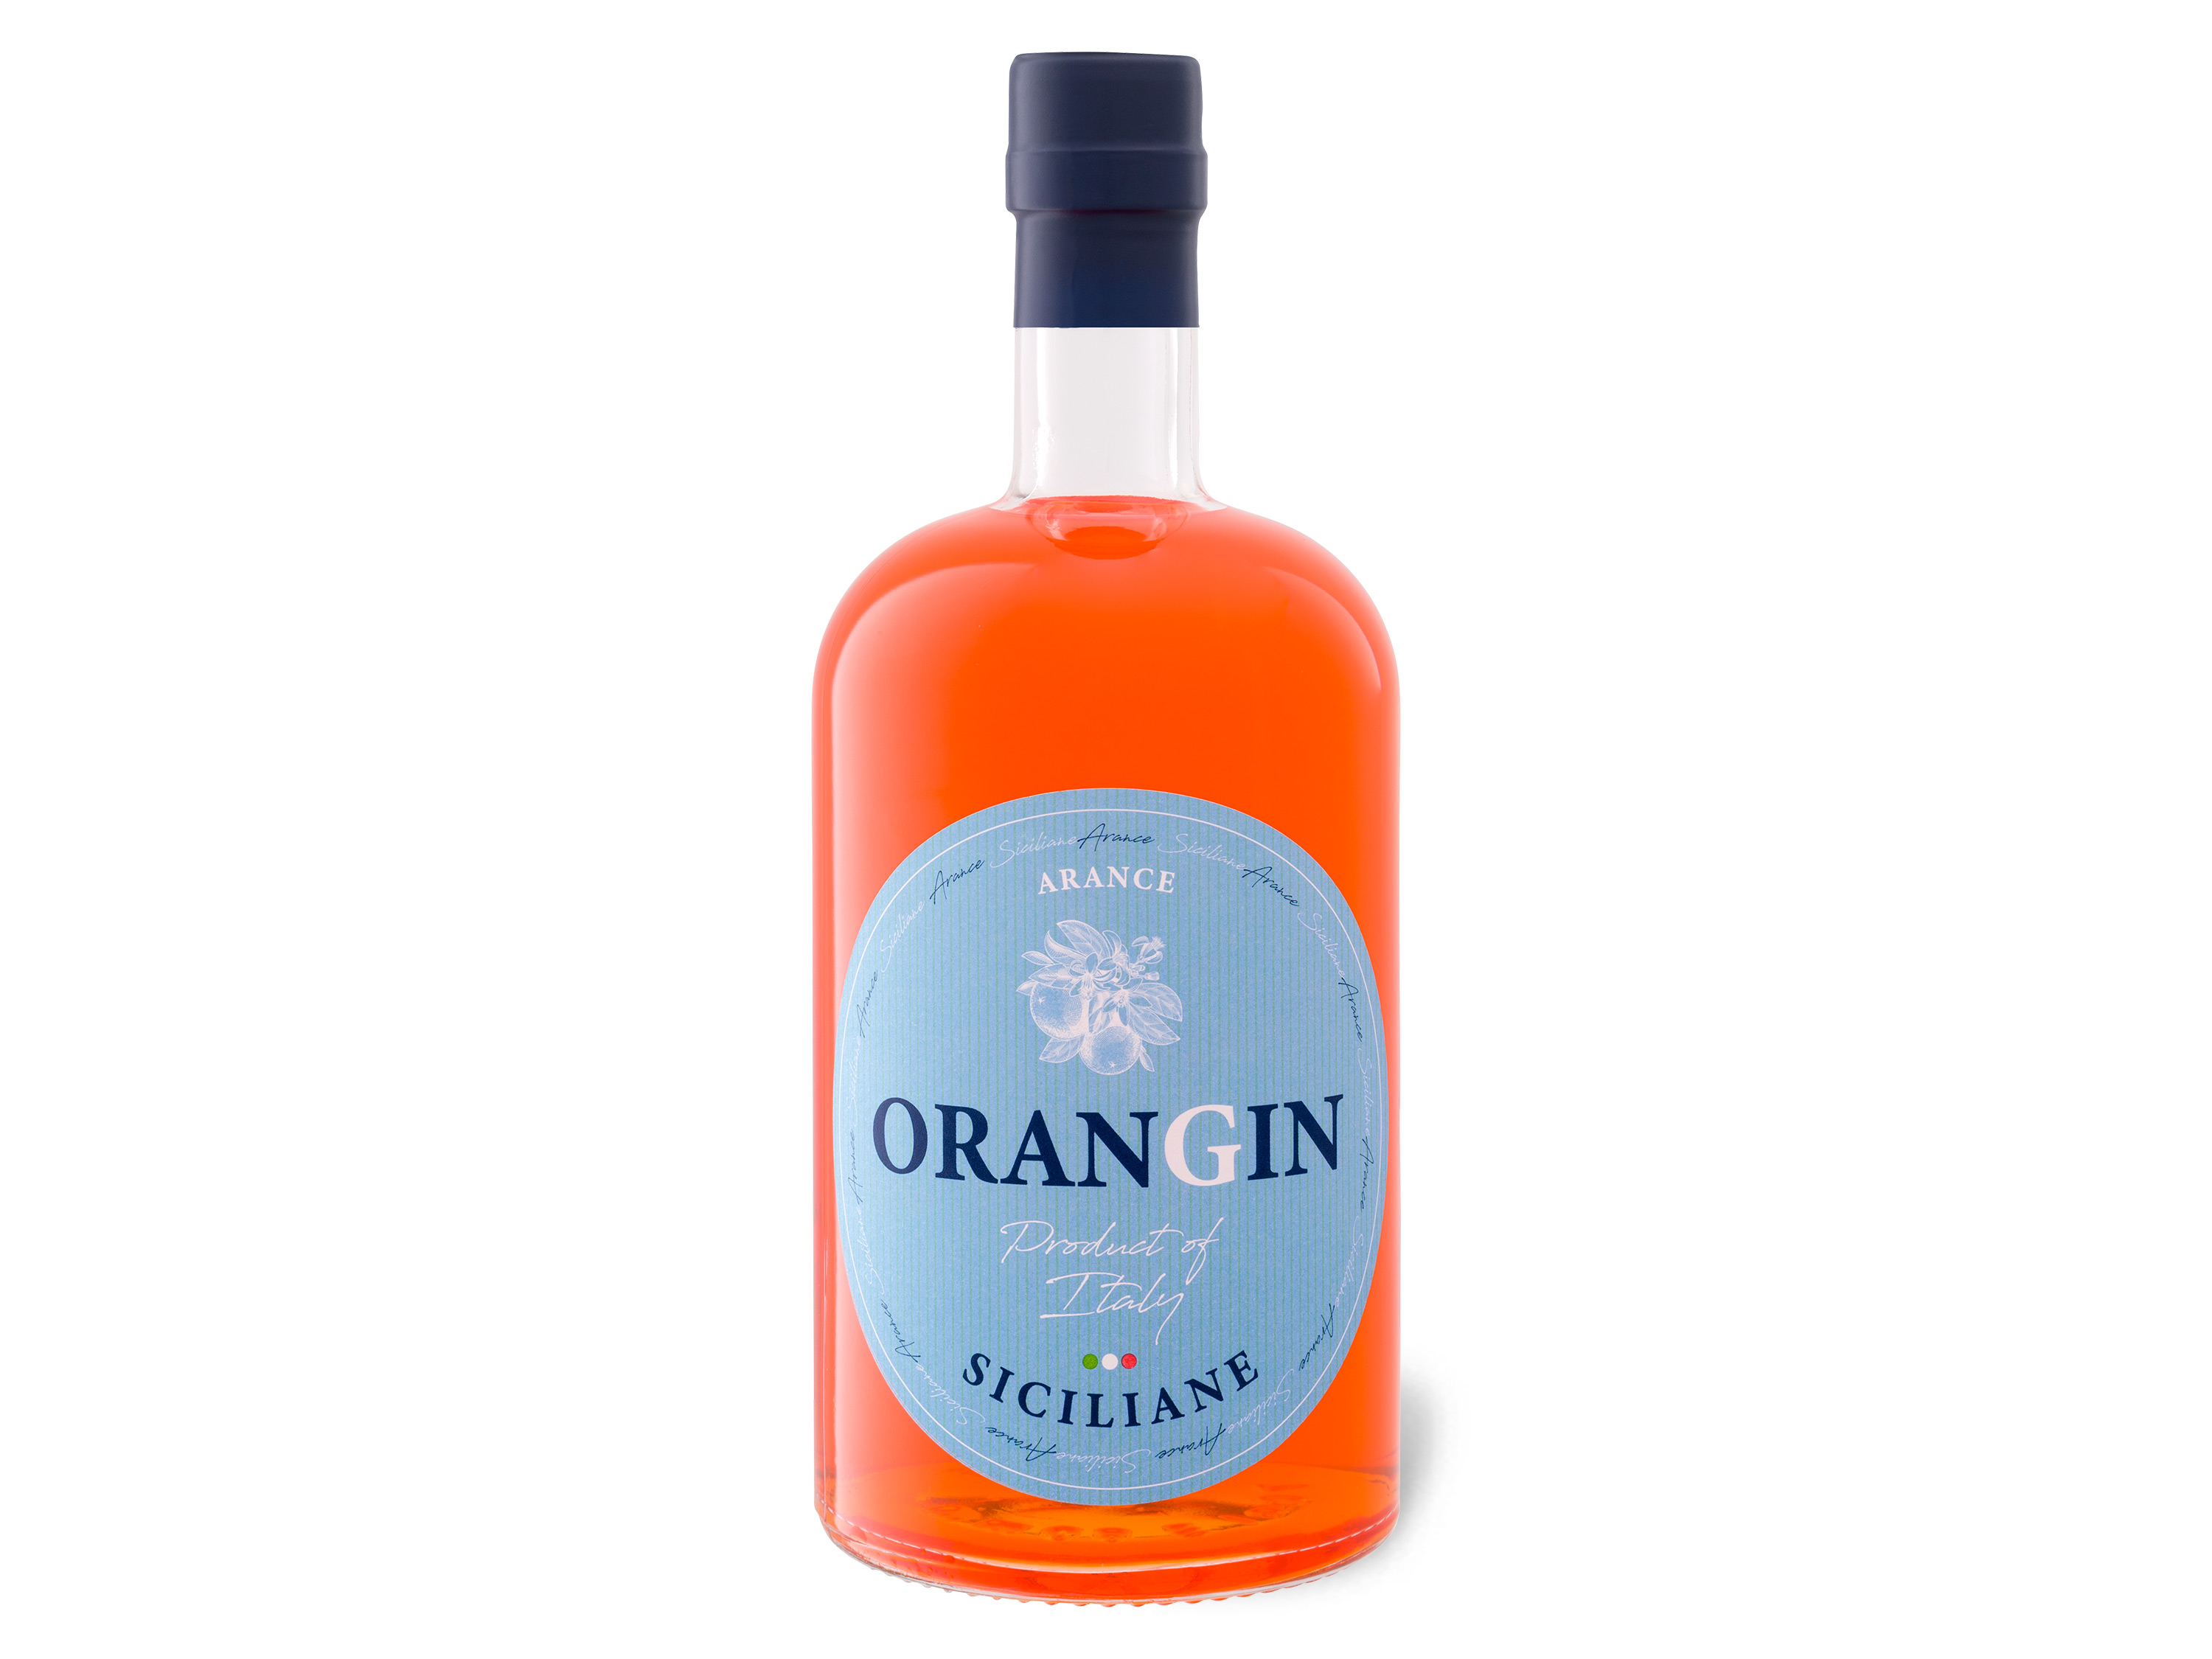 OranGin Siciliane 40% Vol 